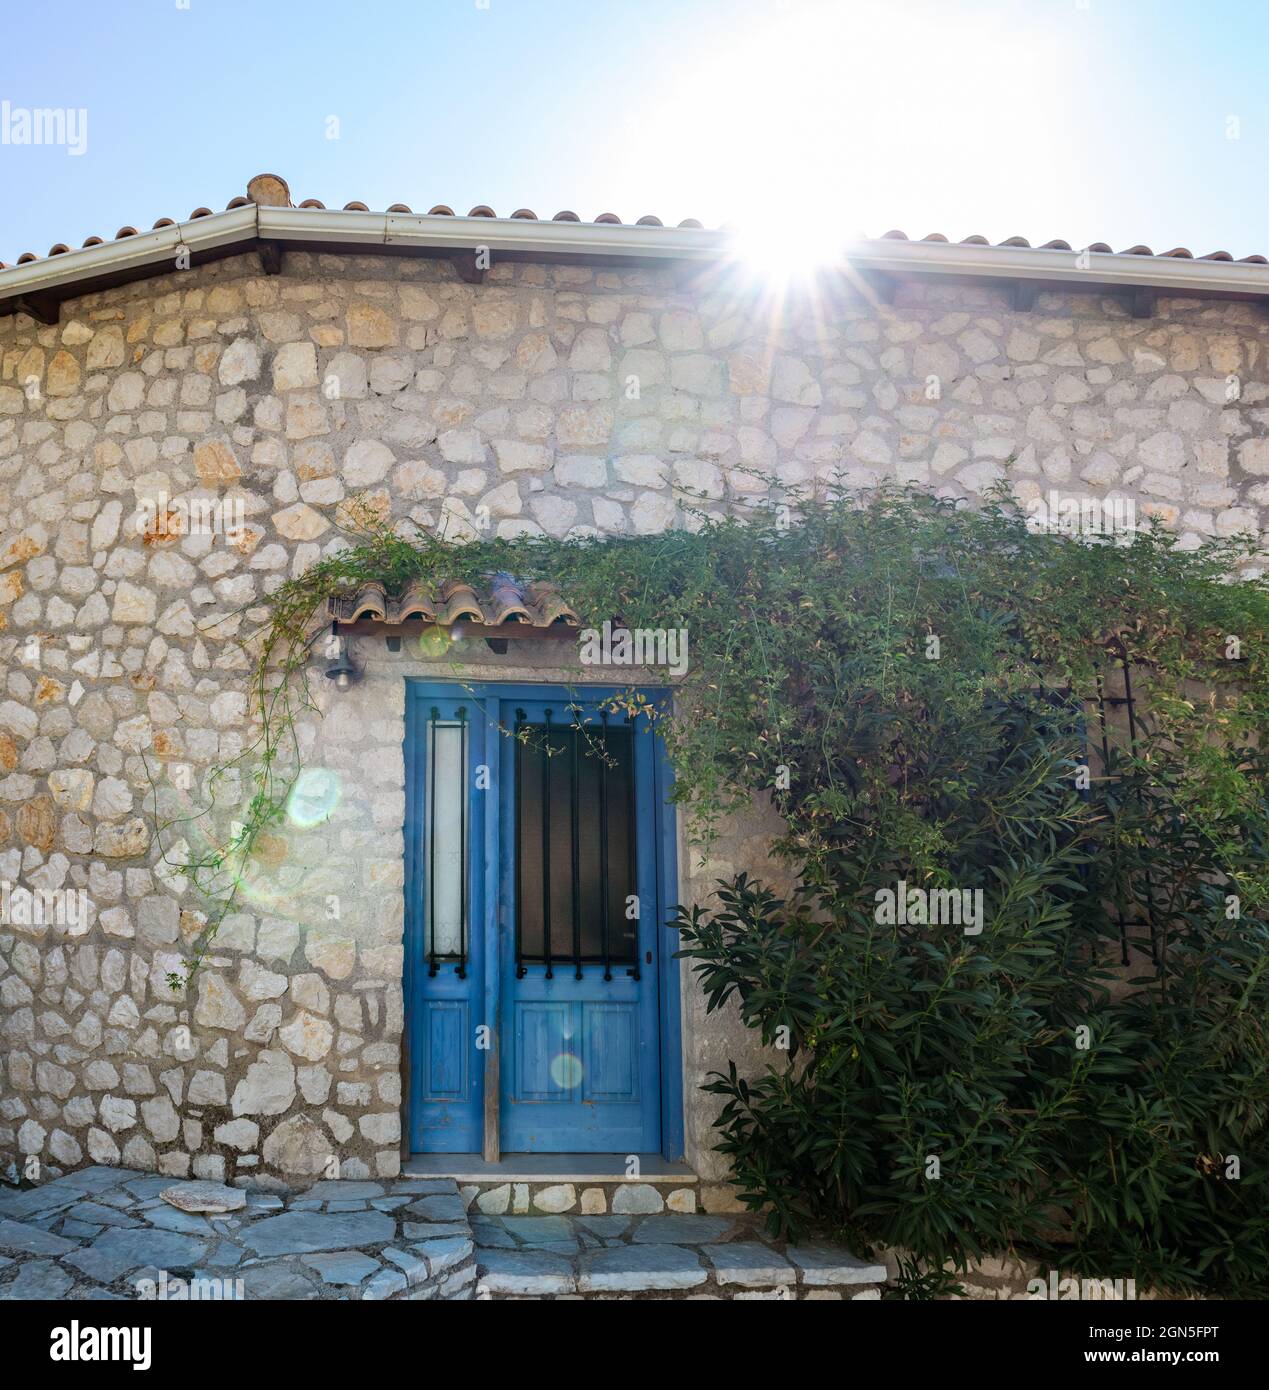 Le soleil brille au-dessus du toit traditionnel grec de la maison avec des murs en pierre, des volets de portes bleues et des branches d'arbres vertes. Voyage d'été en Méditerranée traditionnelle Banque D'Images